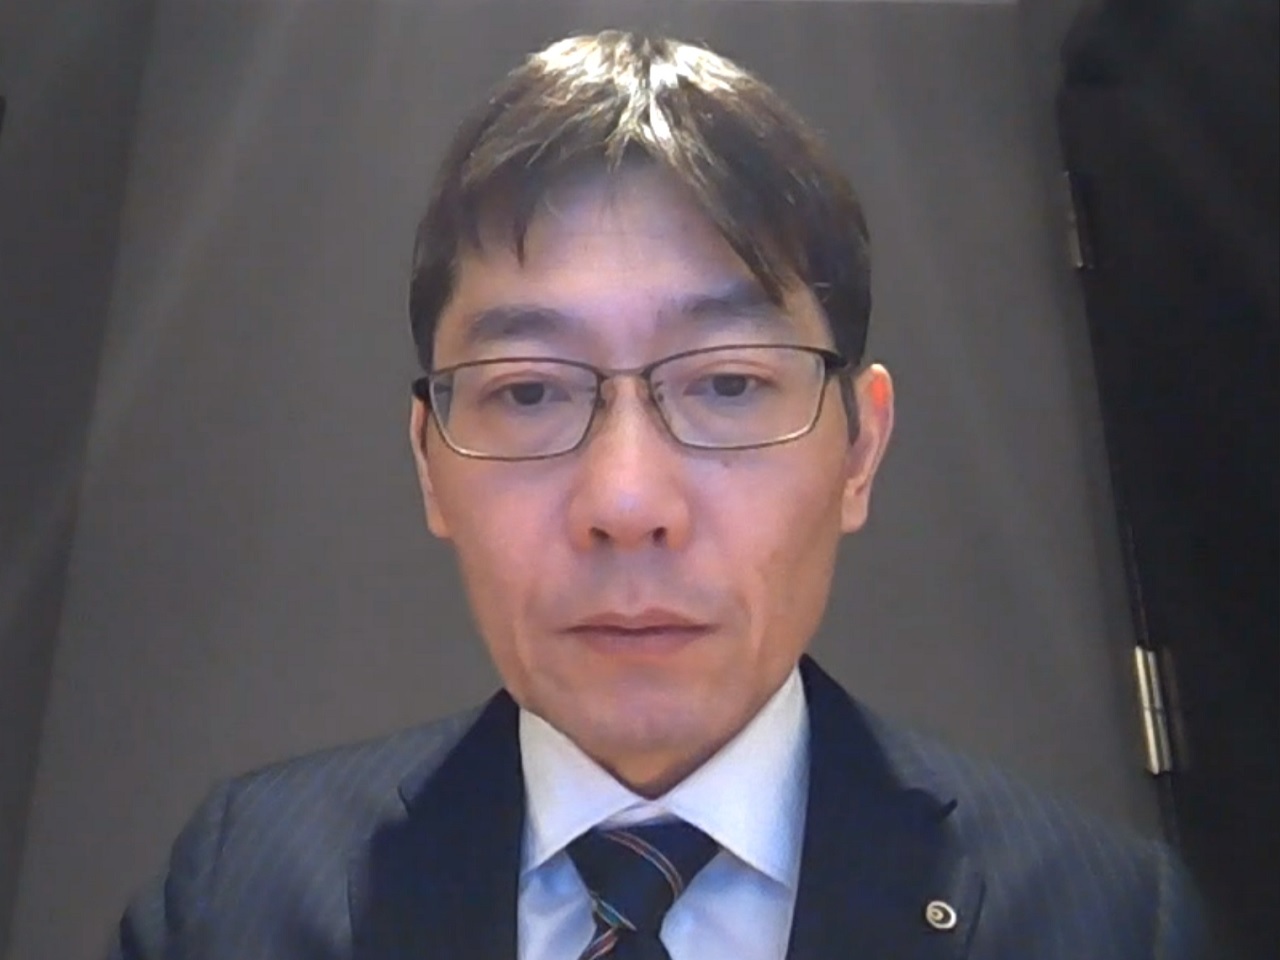 NTT人間情報研究所 デジタルツインコンピューティング研究センタアナザーミーグループ グループリーダー 深山篤氏